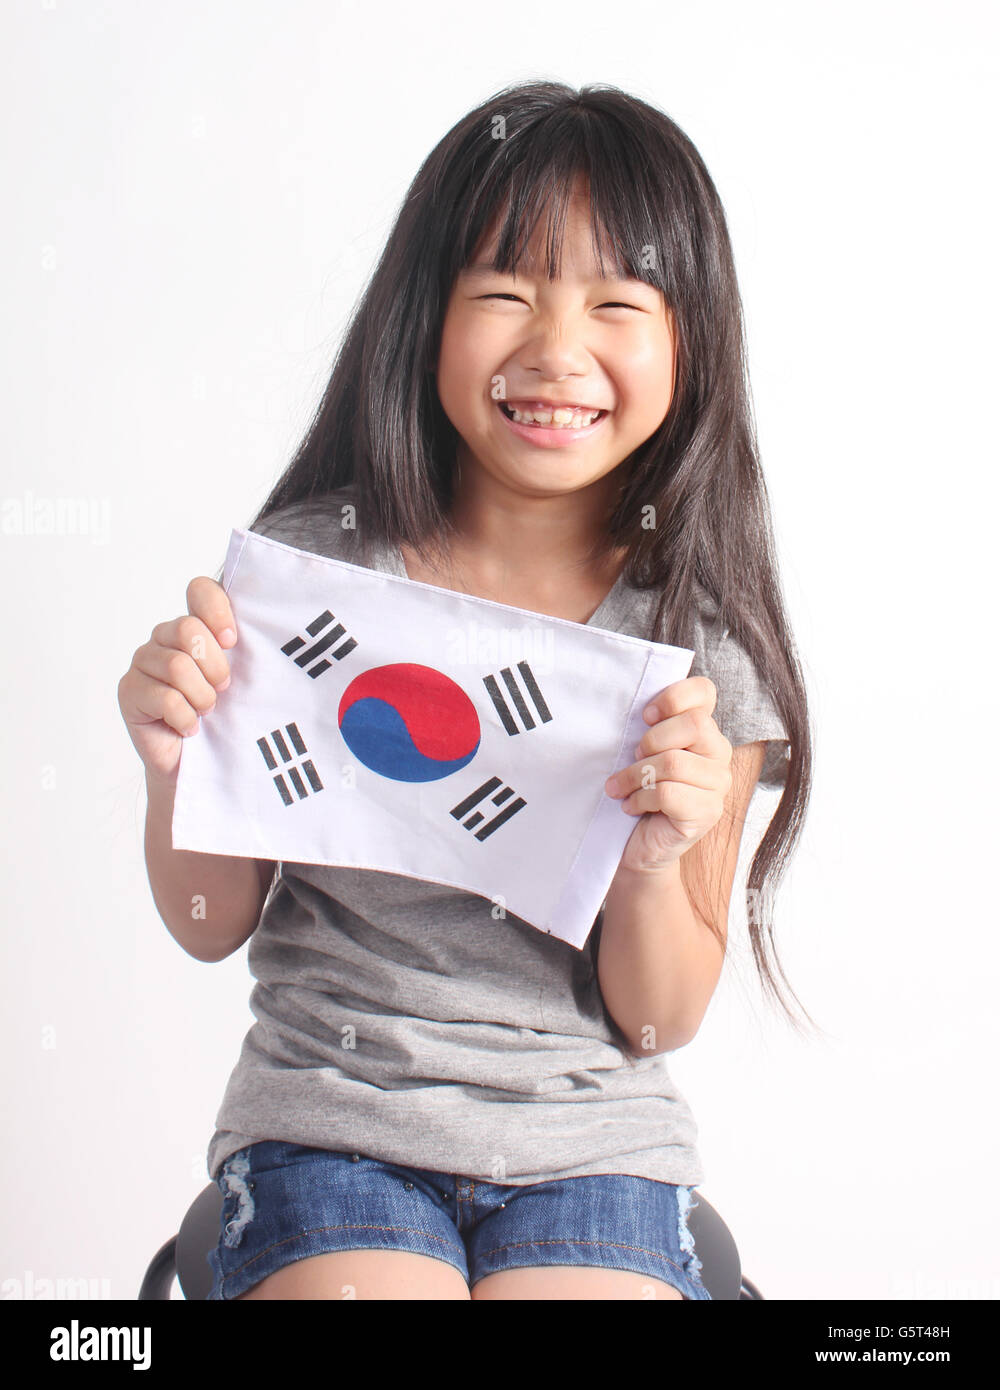 Frau Oder Mädchen Mit Südkorea-Flagge Aus Dem Offenen Autofenster  Lizenzfreie Fotos, Bilder und Stock Fotografie. Image 125489972.